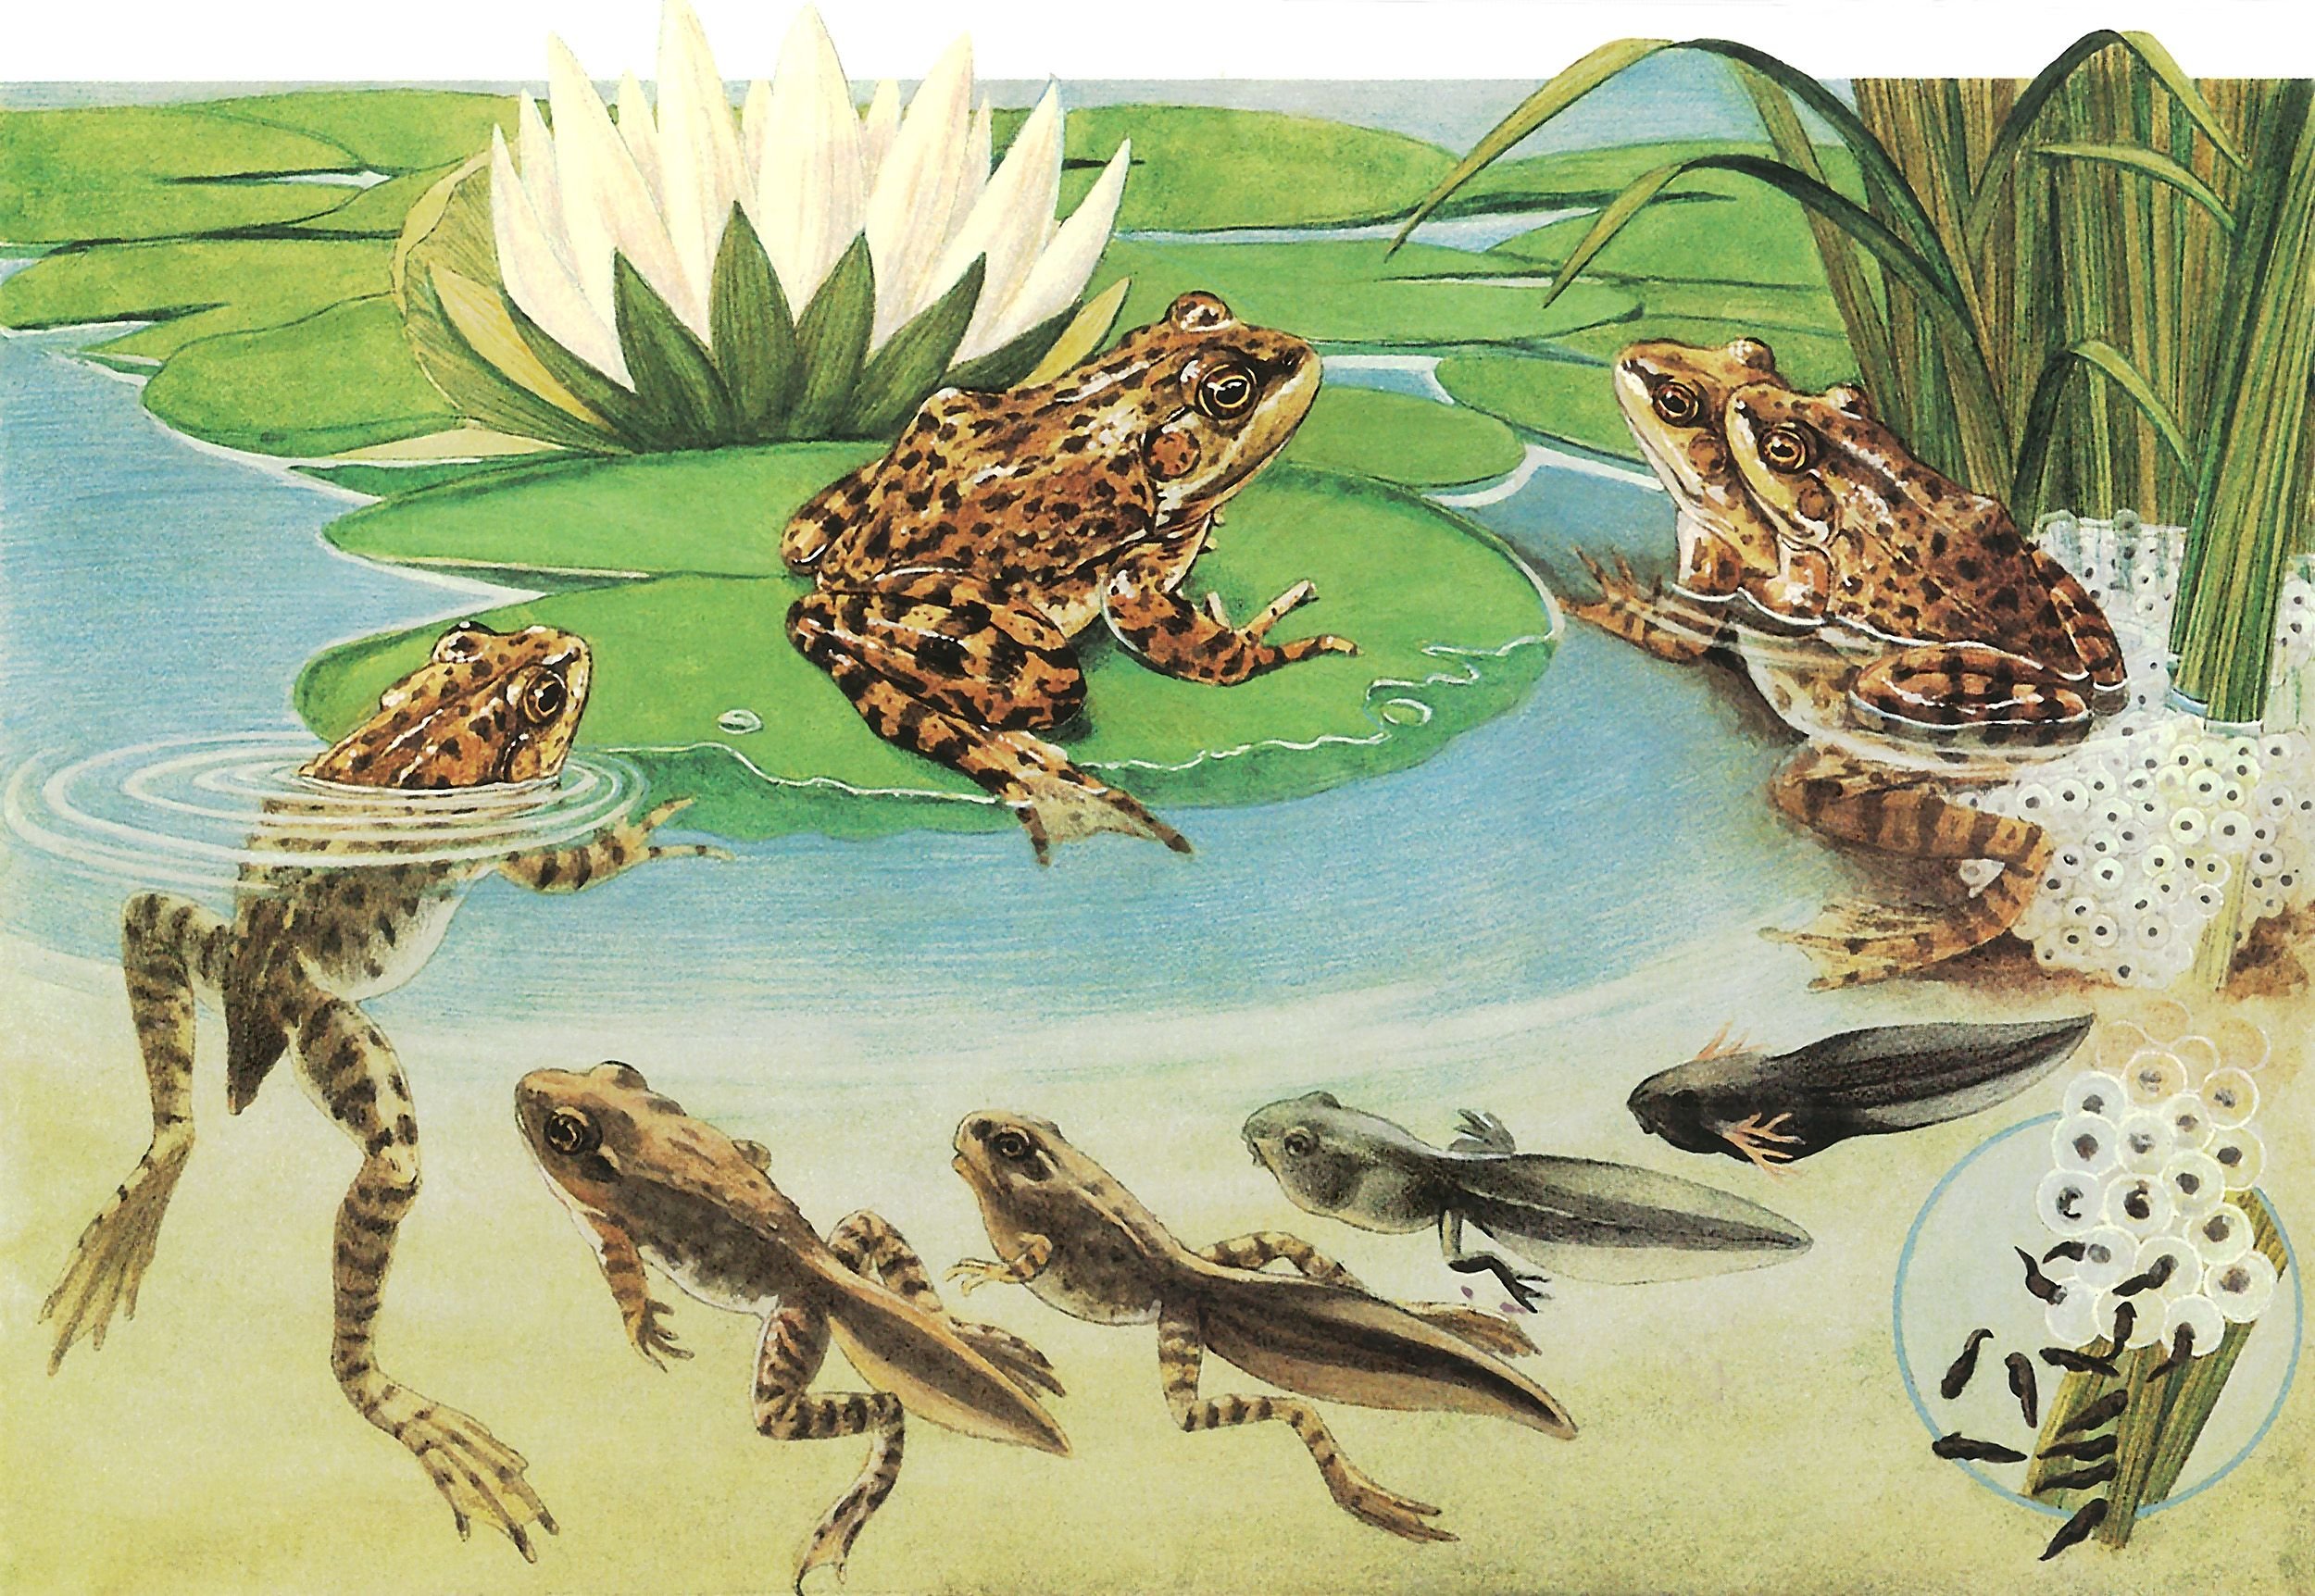 Пресмыкающиеся размножаются в воде. Стадии развития головастика лягушки. Превращение головастика в лягушку. Жизненный цикл развития лягушки. Травяная лягушка жизненный цикл.